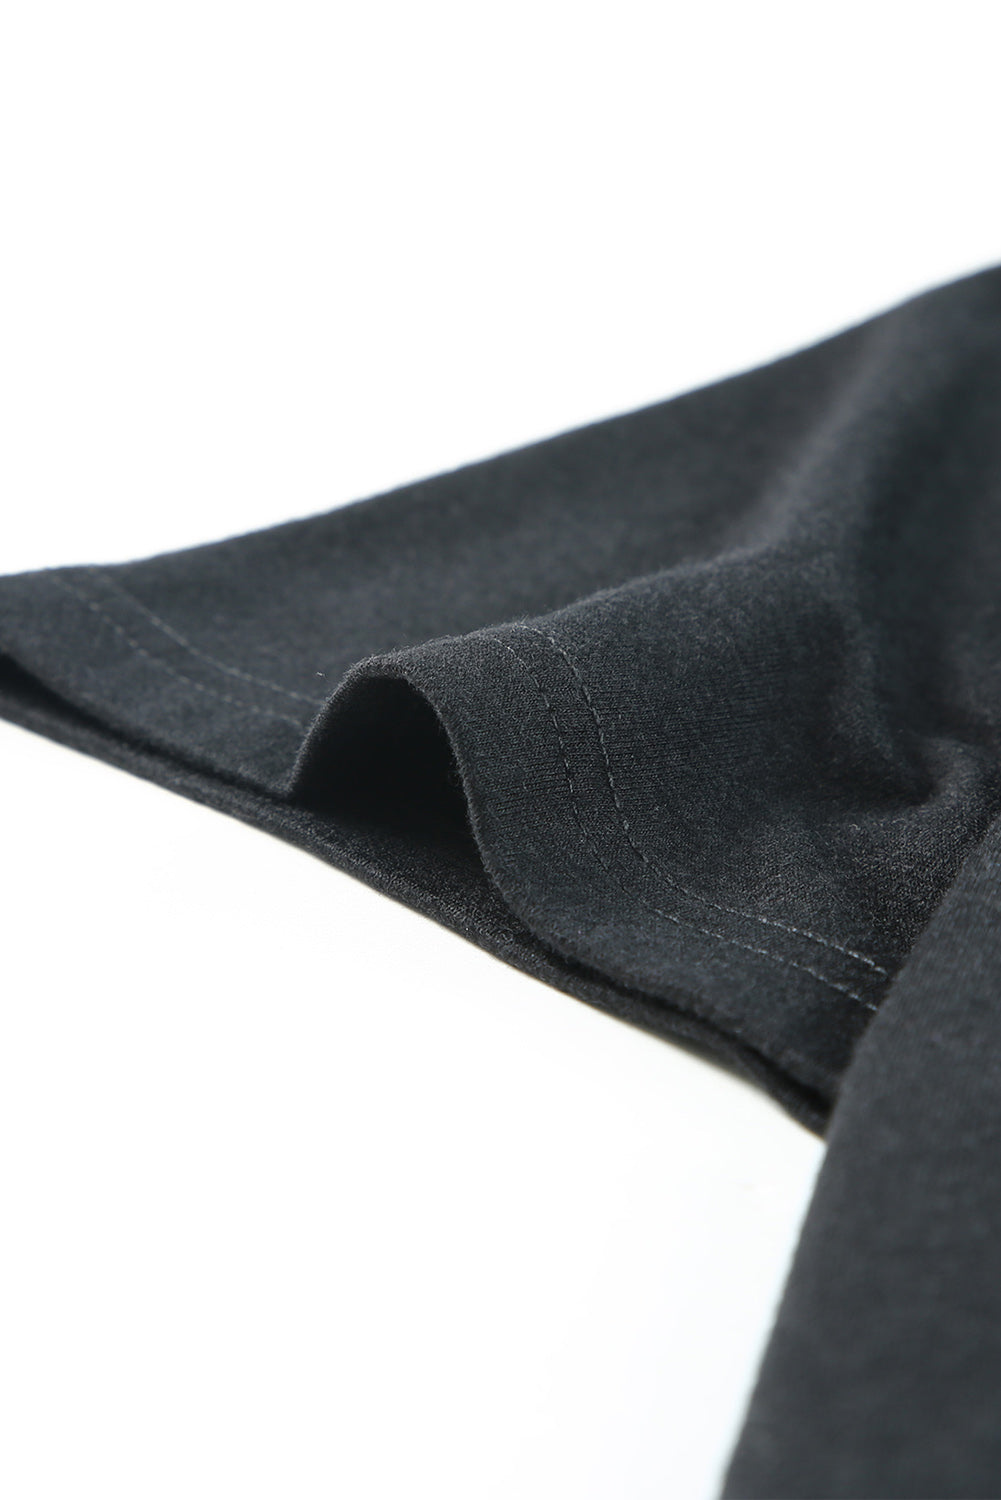 Black V Neck Shirring Short Sleeve Top Pre Order Tops JT's Designer Fashion